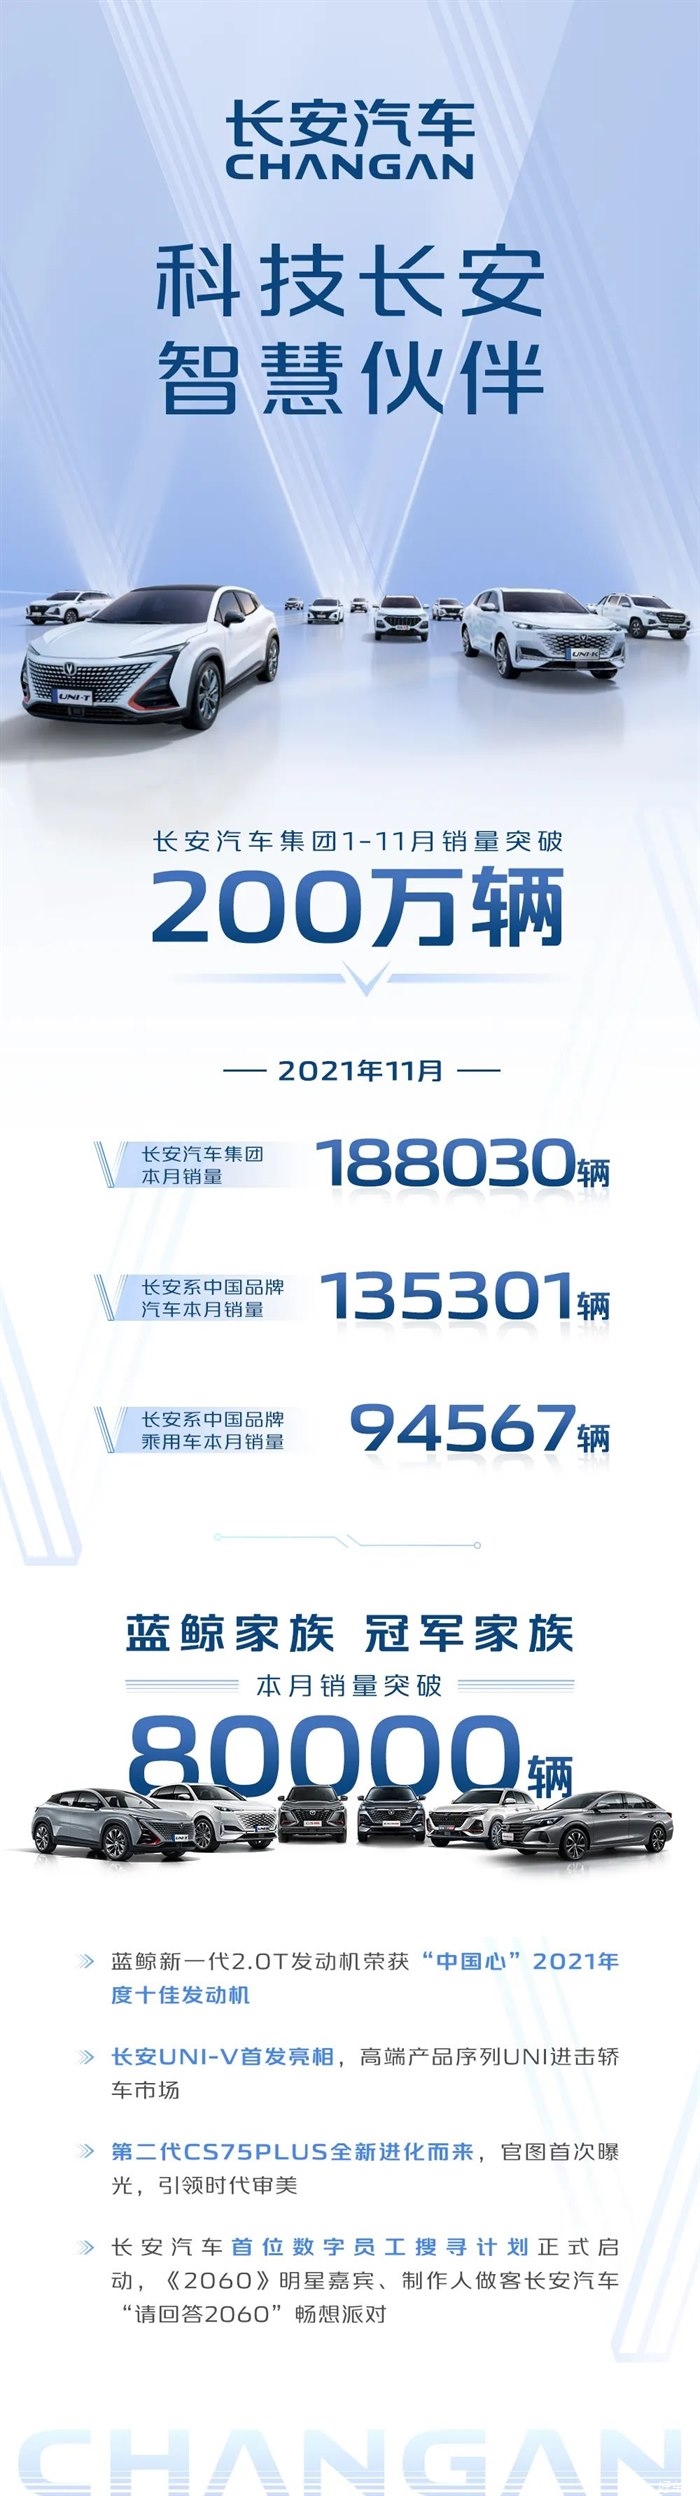 销量快报丨长安汽车集团1-11月销量突破200万辆 ！同比上涨17.7%！